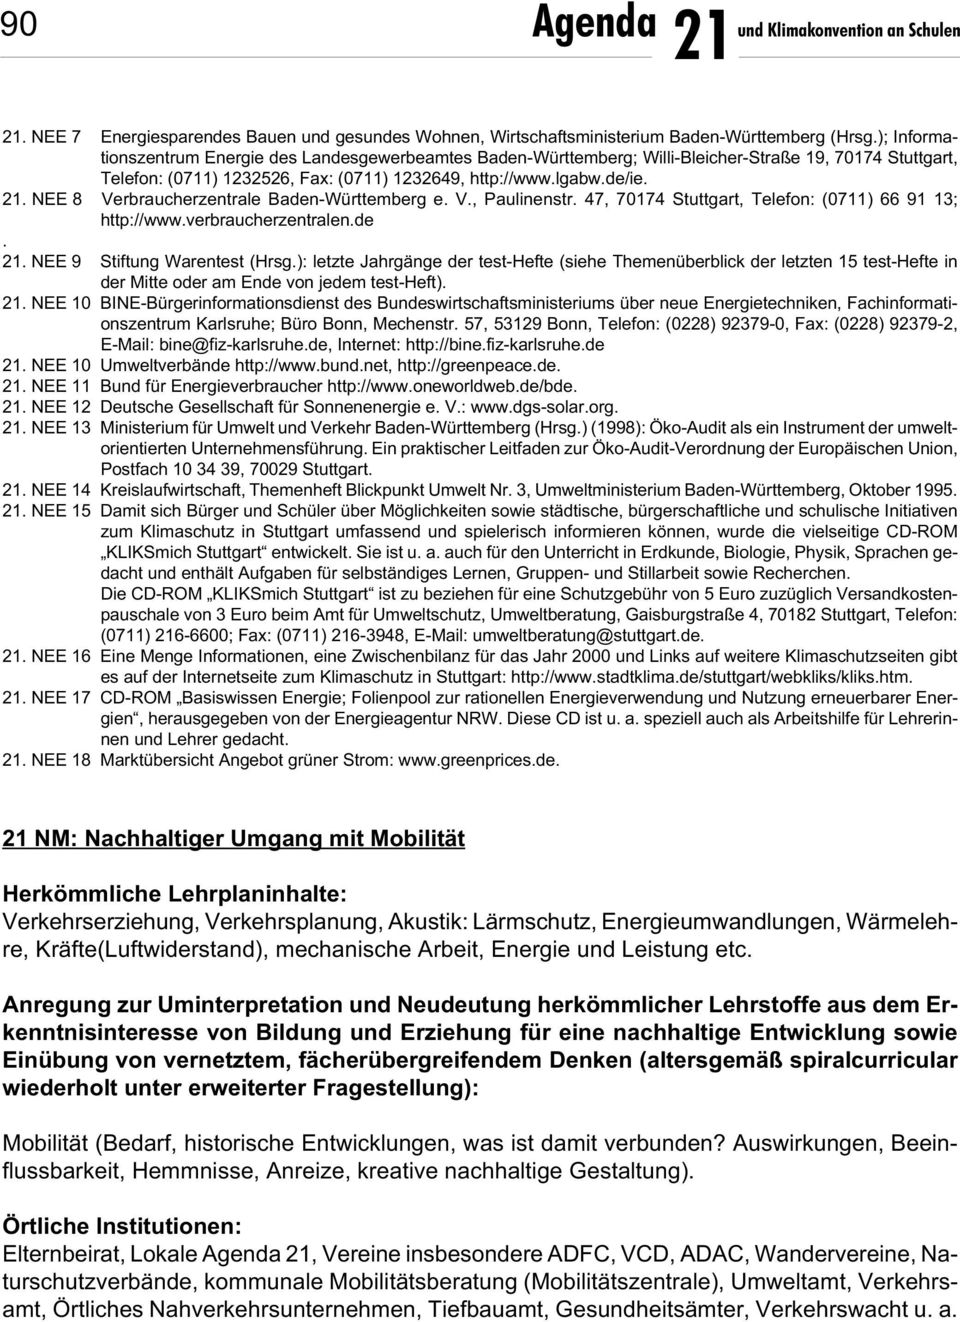 . NEE 8 Verbraucherzentrale Baden-Württemberg e. V., Paulinenstr. 47, 70174 Stuttgart, Telefon: (0711) 66 91 13; http://www.verbraucherzentralen.de.. NEE 9 Stiftung Warentest (Hrsg.